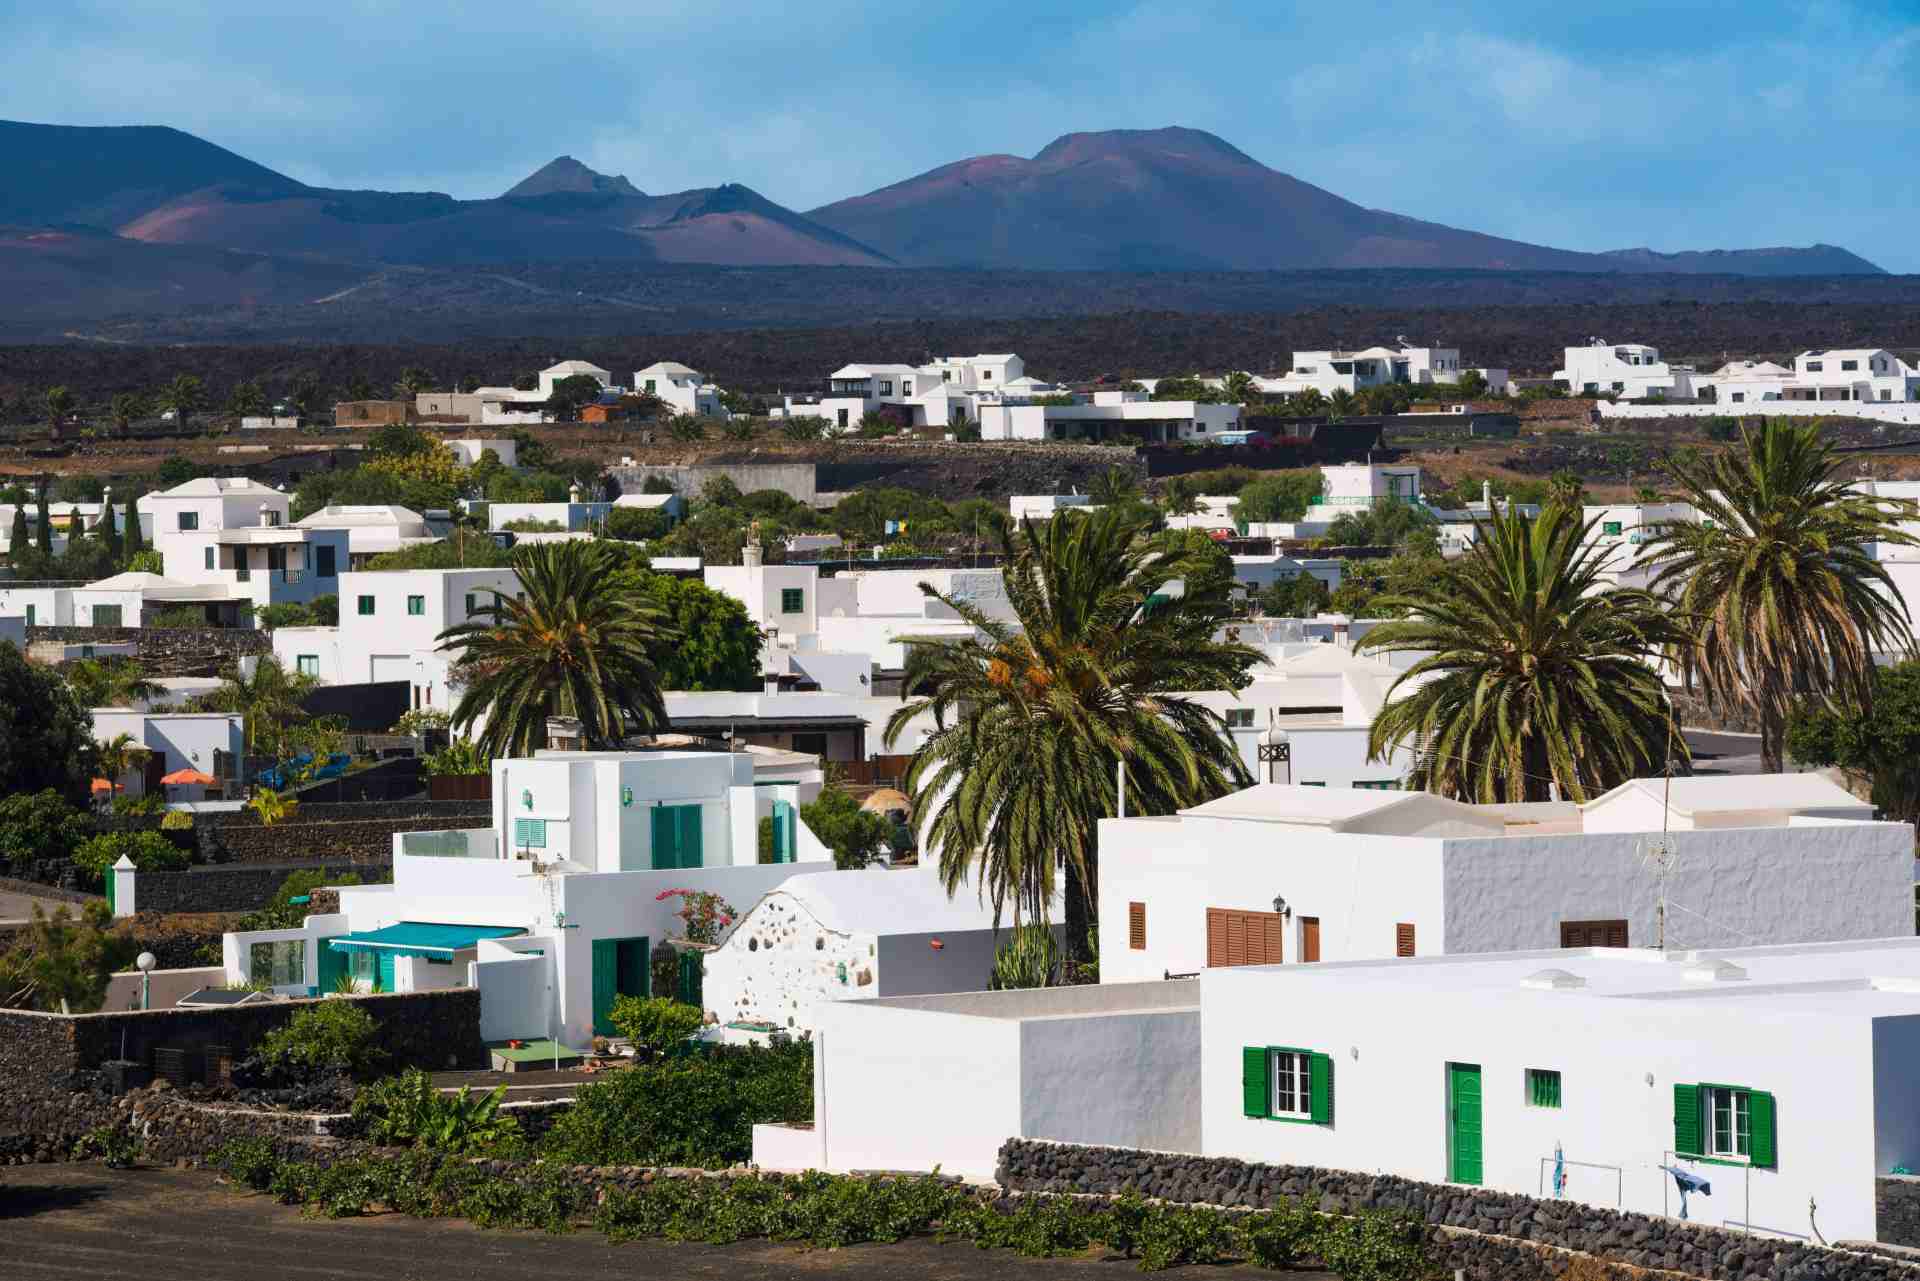 Yaiza schönstes Dorf auf Lanzarote